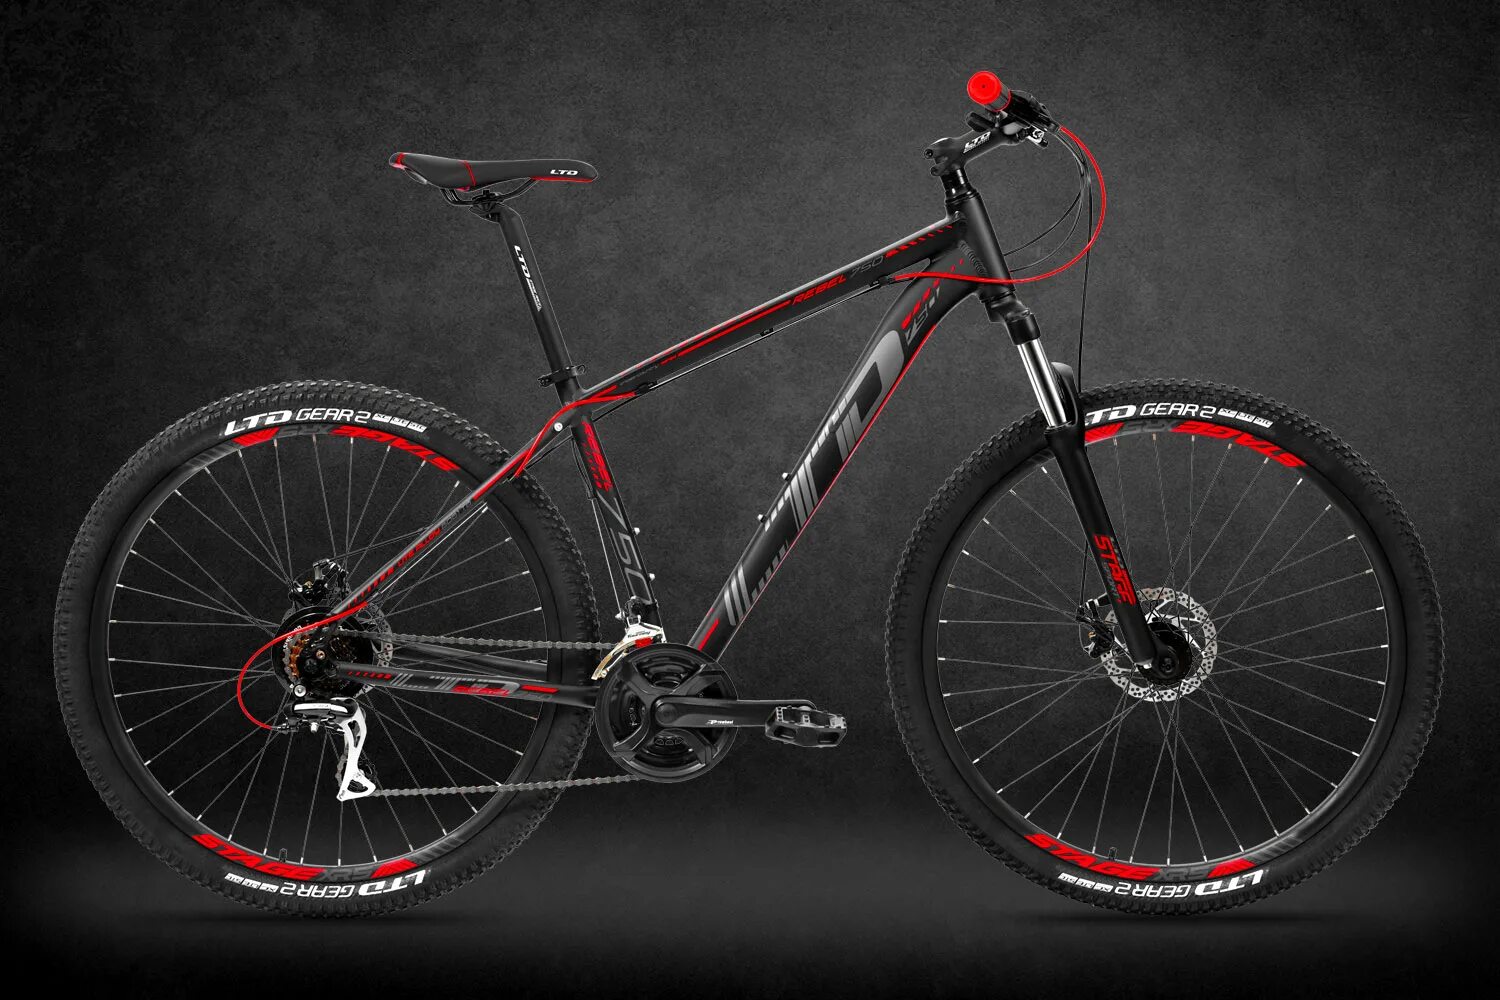 Ltd велосипеды купить. Велосипед Rebel 2r. Горный велосипед Rebel Rise. Велосипед кросс черно красный. Ltd Rocco 760 (27,5").